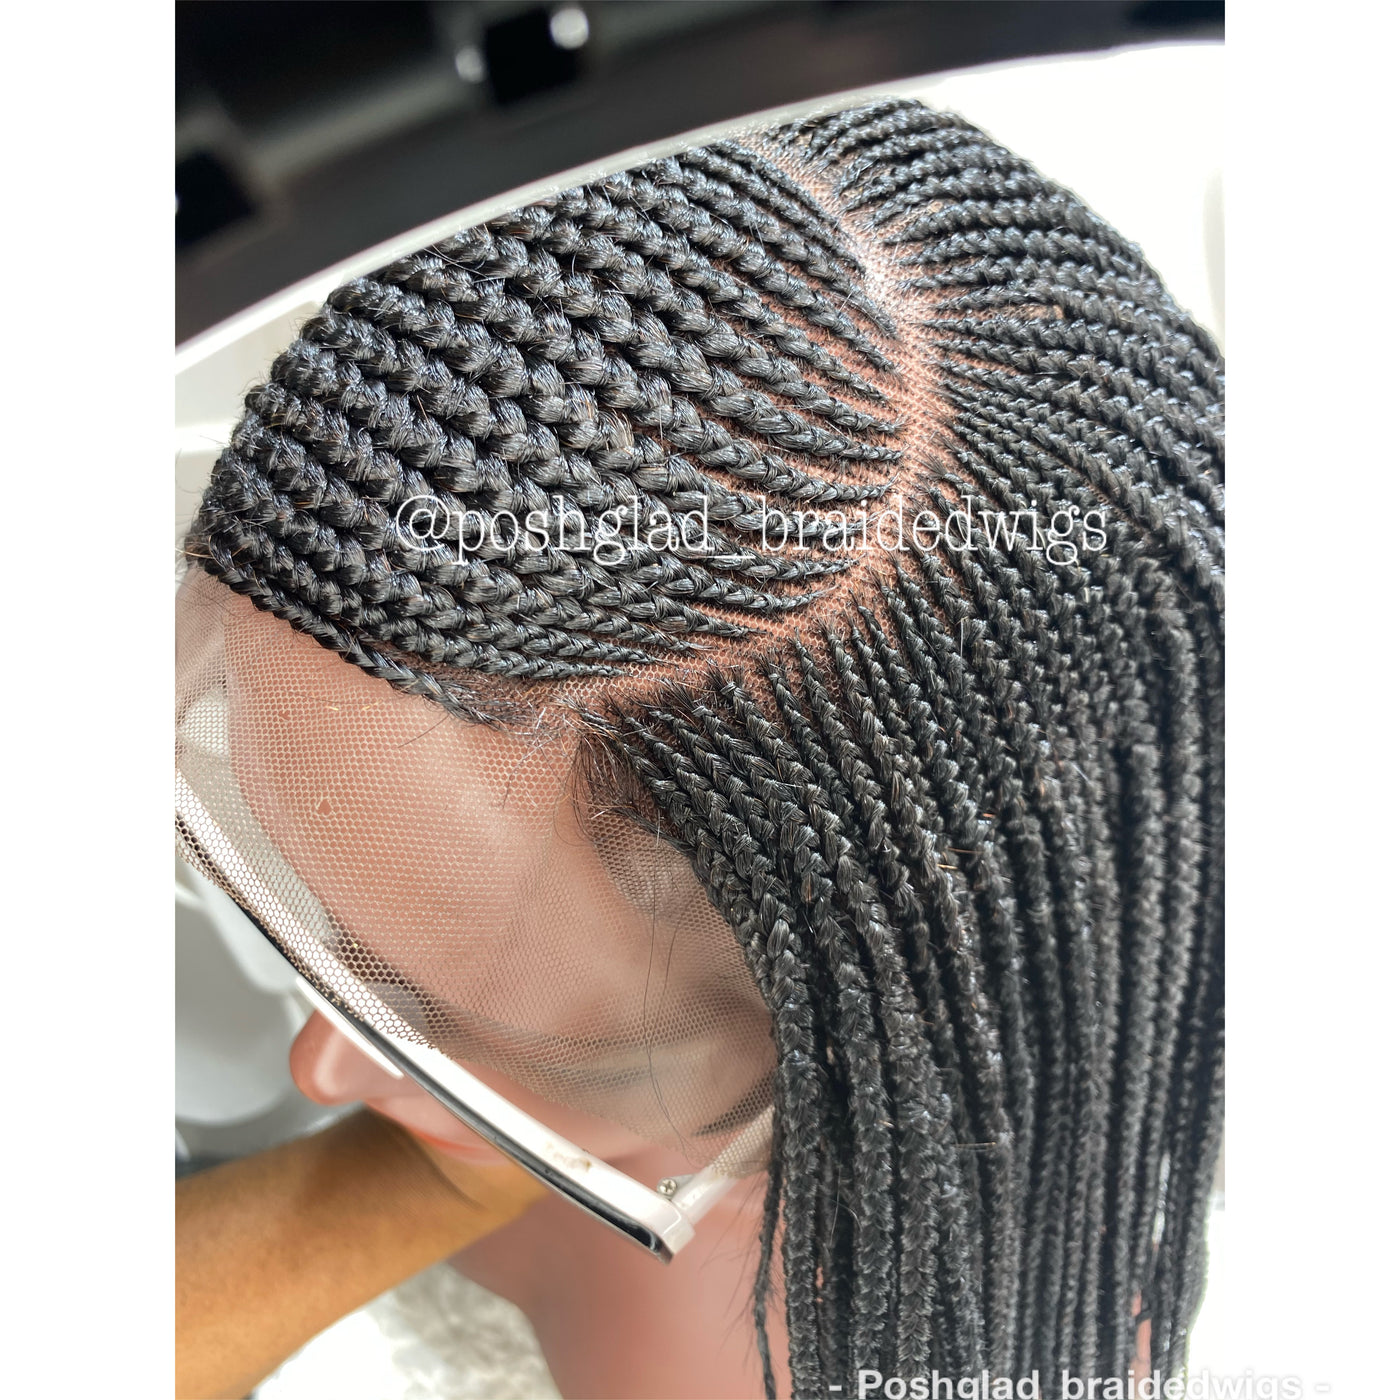 Cornrow Braid Wig - 13x4 Lace Frontal - Amari Poshglad Braided Wigs Cornrow Braid Wig